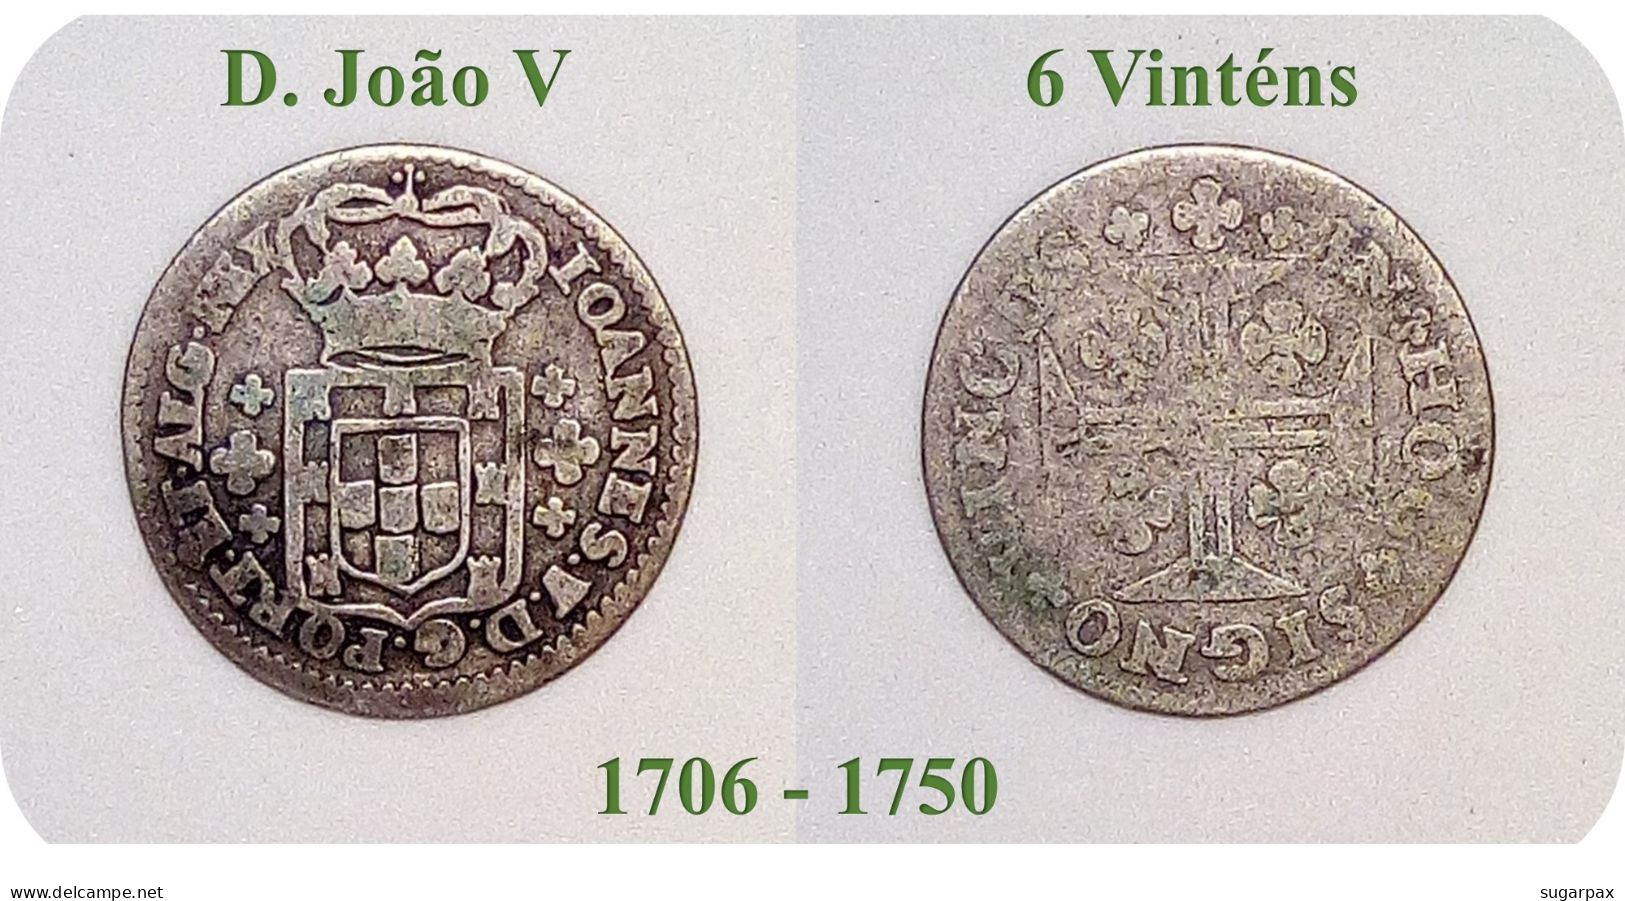 D. João V - 6 Vinténs - N/D ( 1706 - 1750 ) - KM # 178 - SILVER ( Ag 916,6 ) - A.G. 67.01 - Monarquia Portugal - Portugal